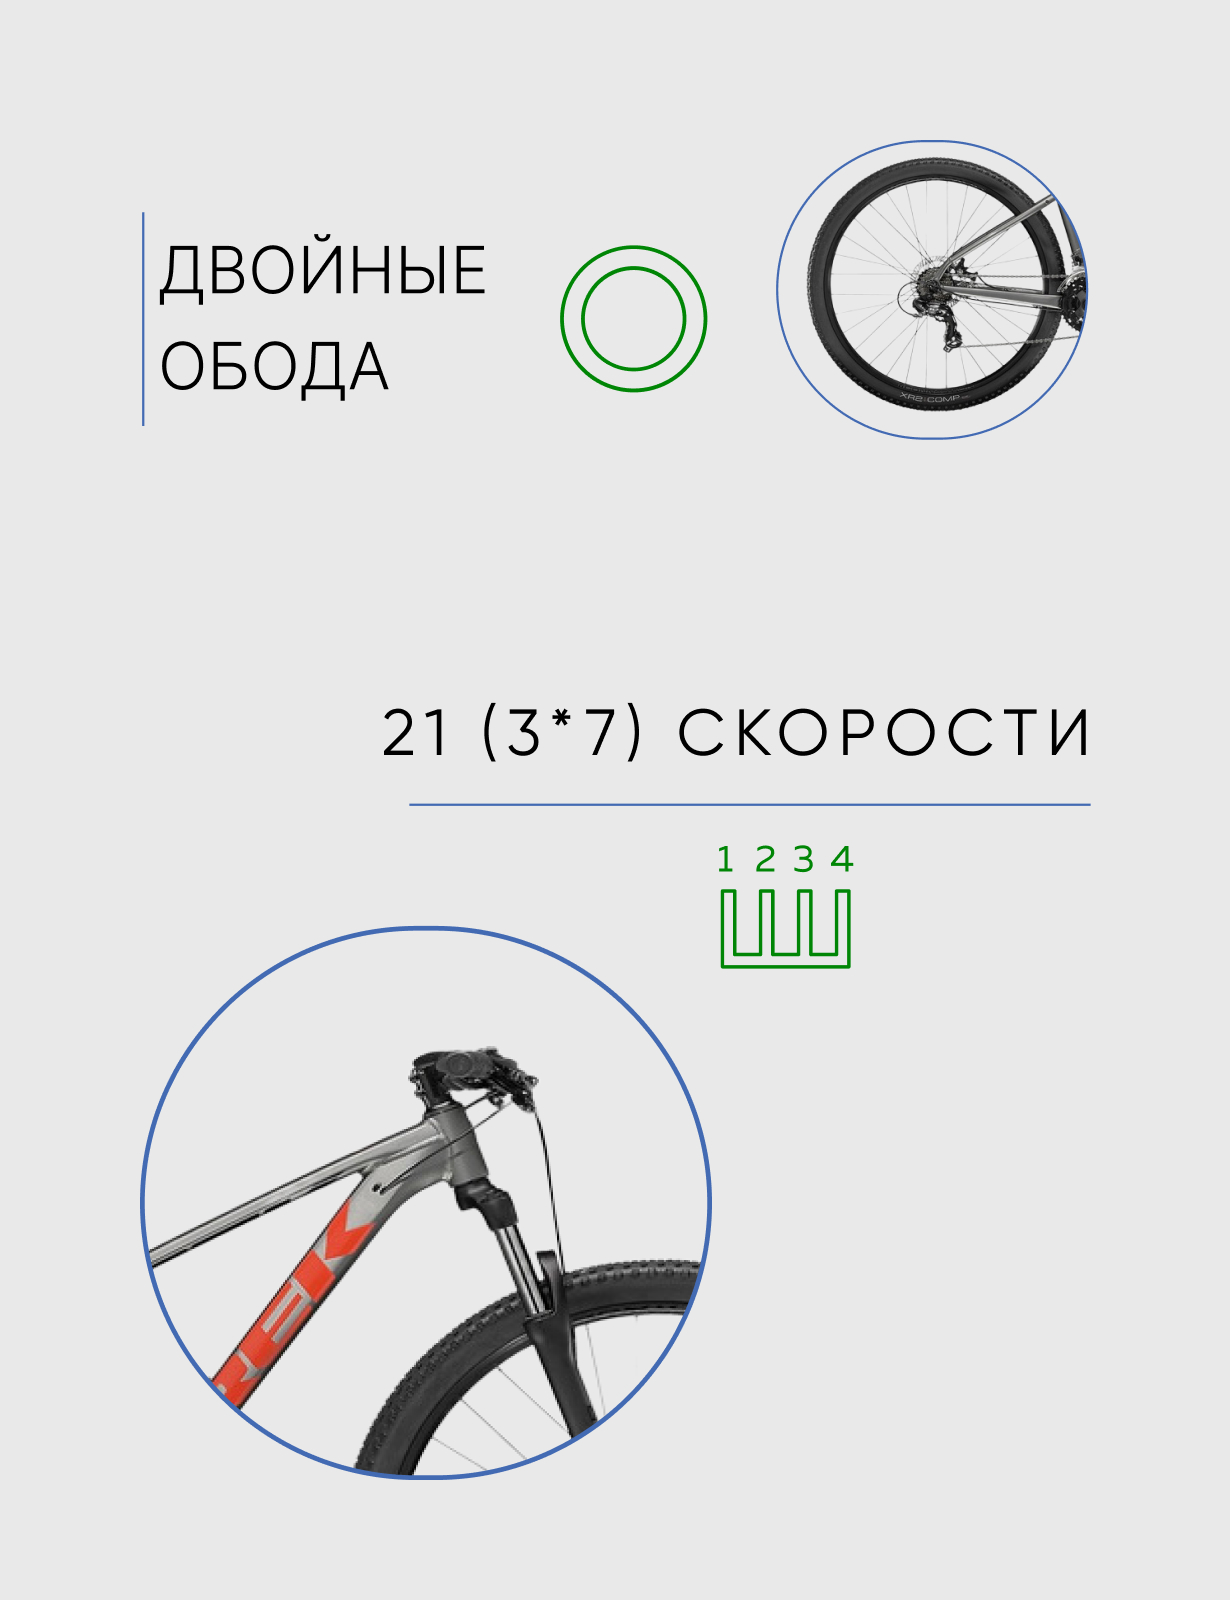 Горный велосипед Trek Marlin 4 29, год 2022, цвет Серебристый-Красный, ростовка 17.5